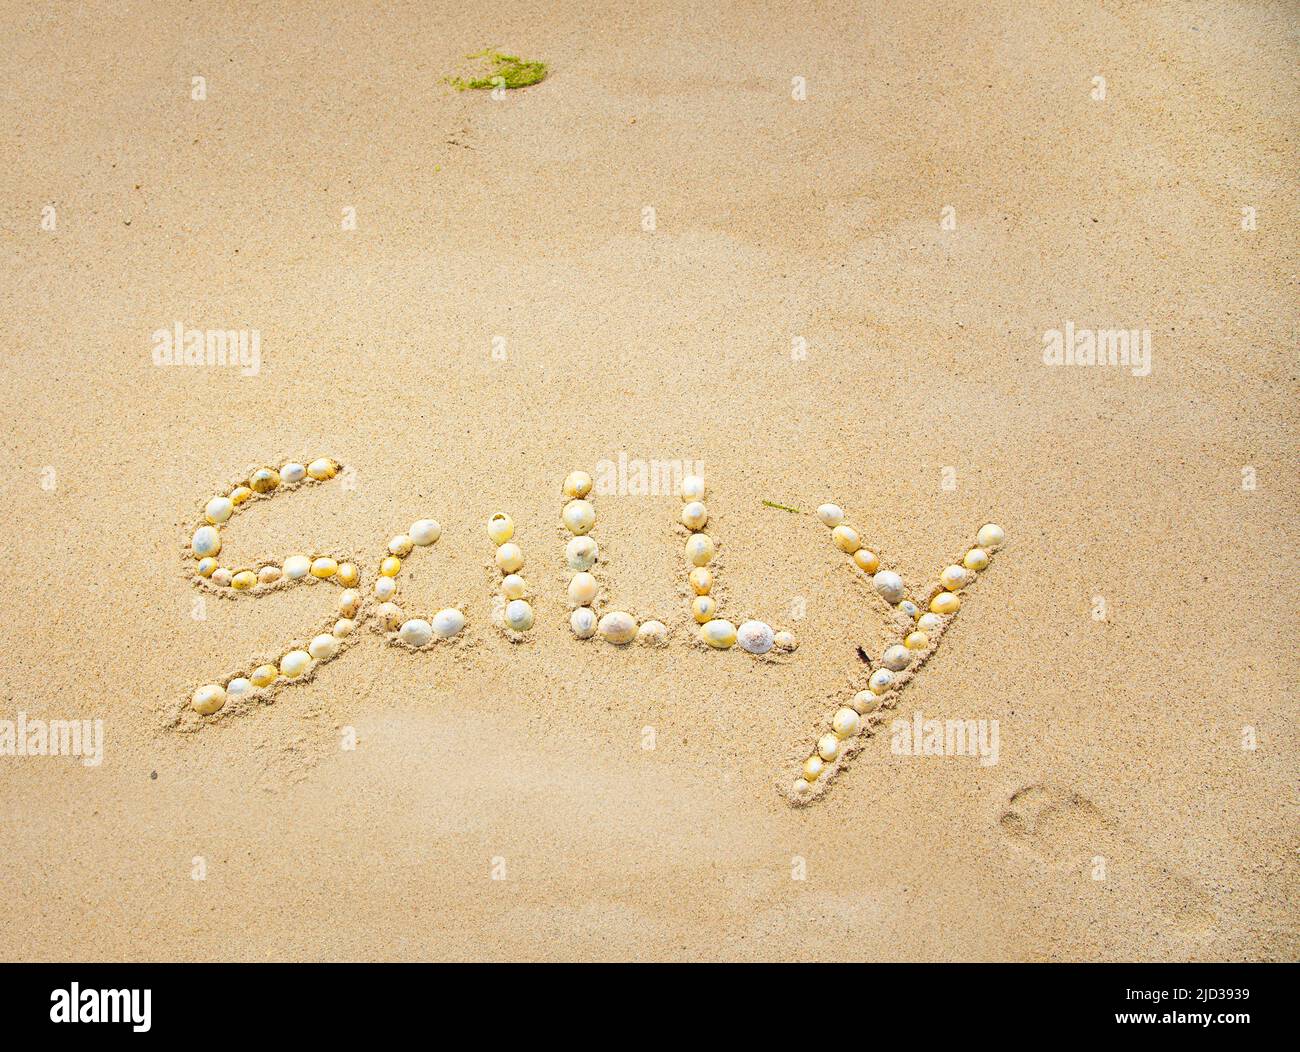 Das Wort albern in Muscheln im Sand geschrieben Stockfoto